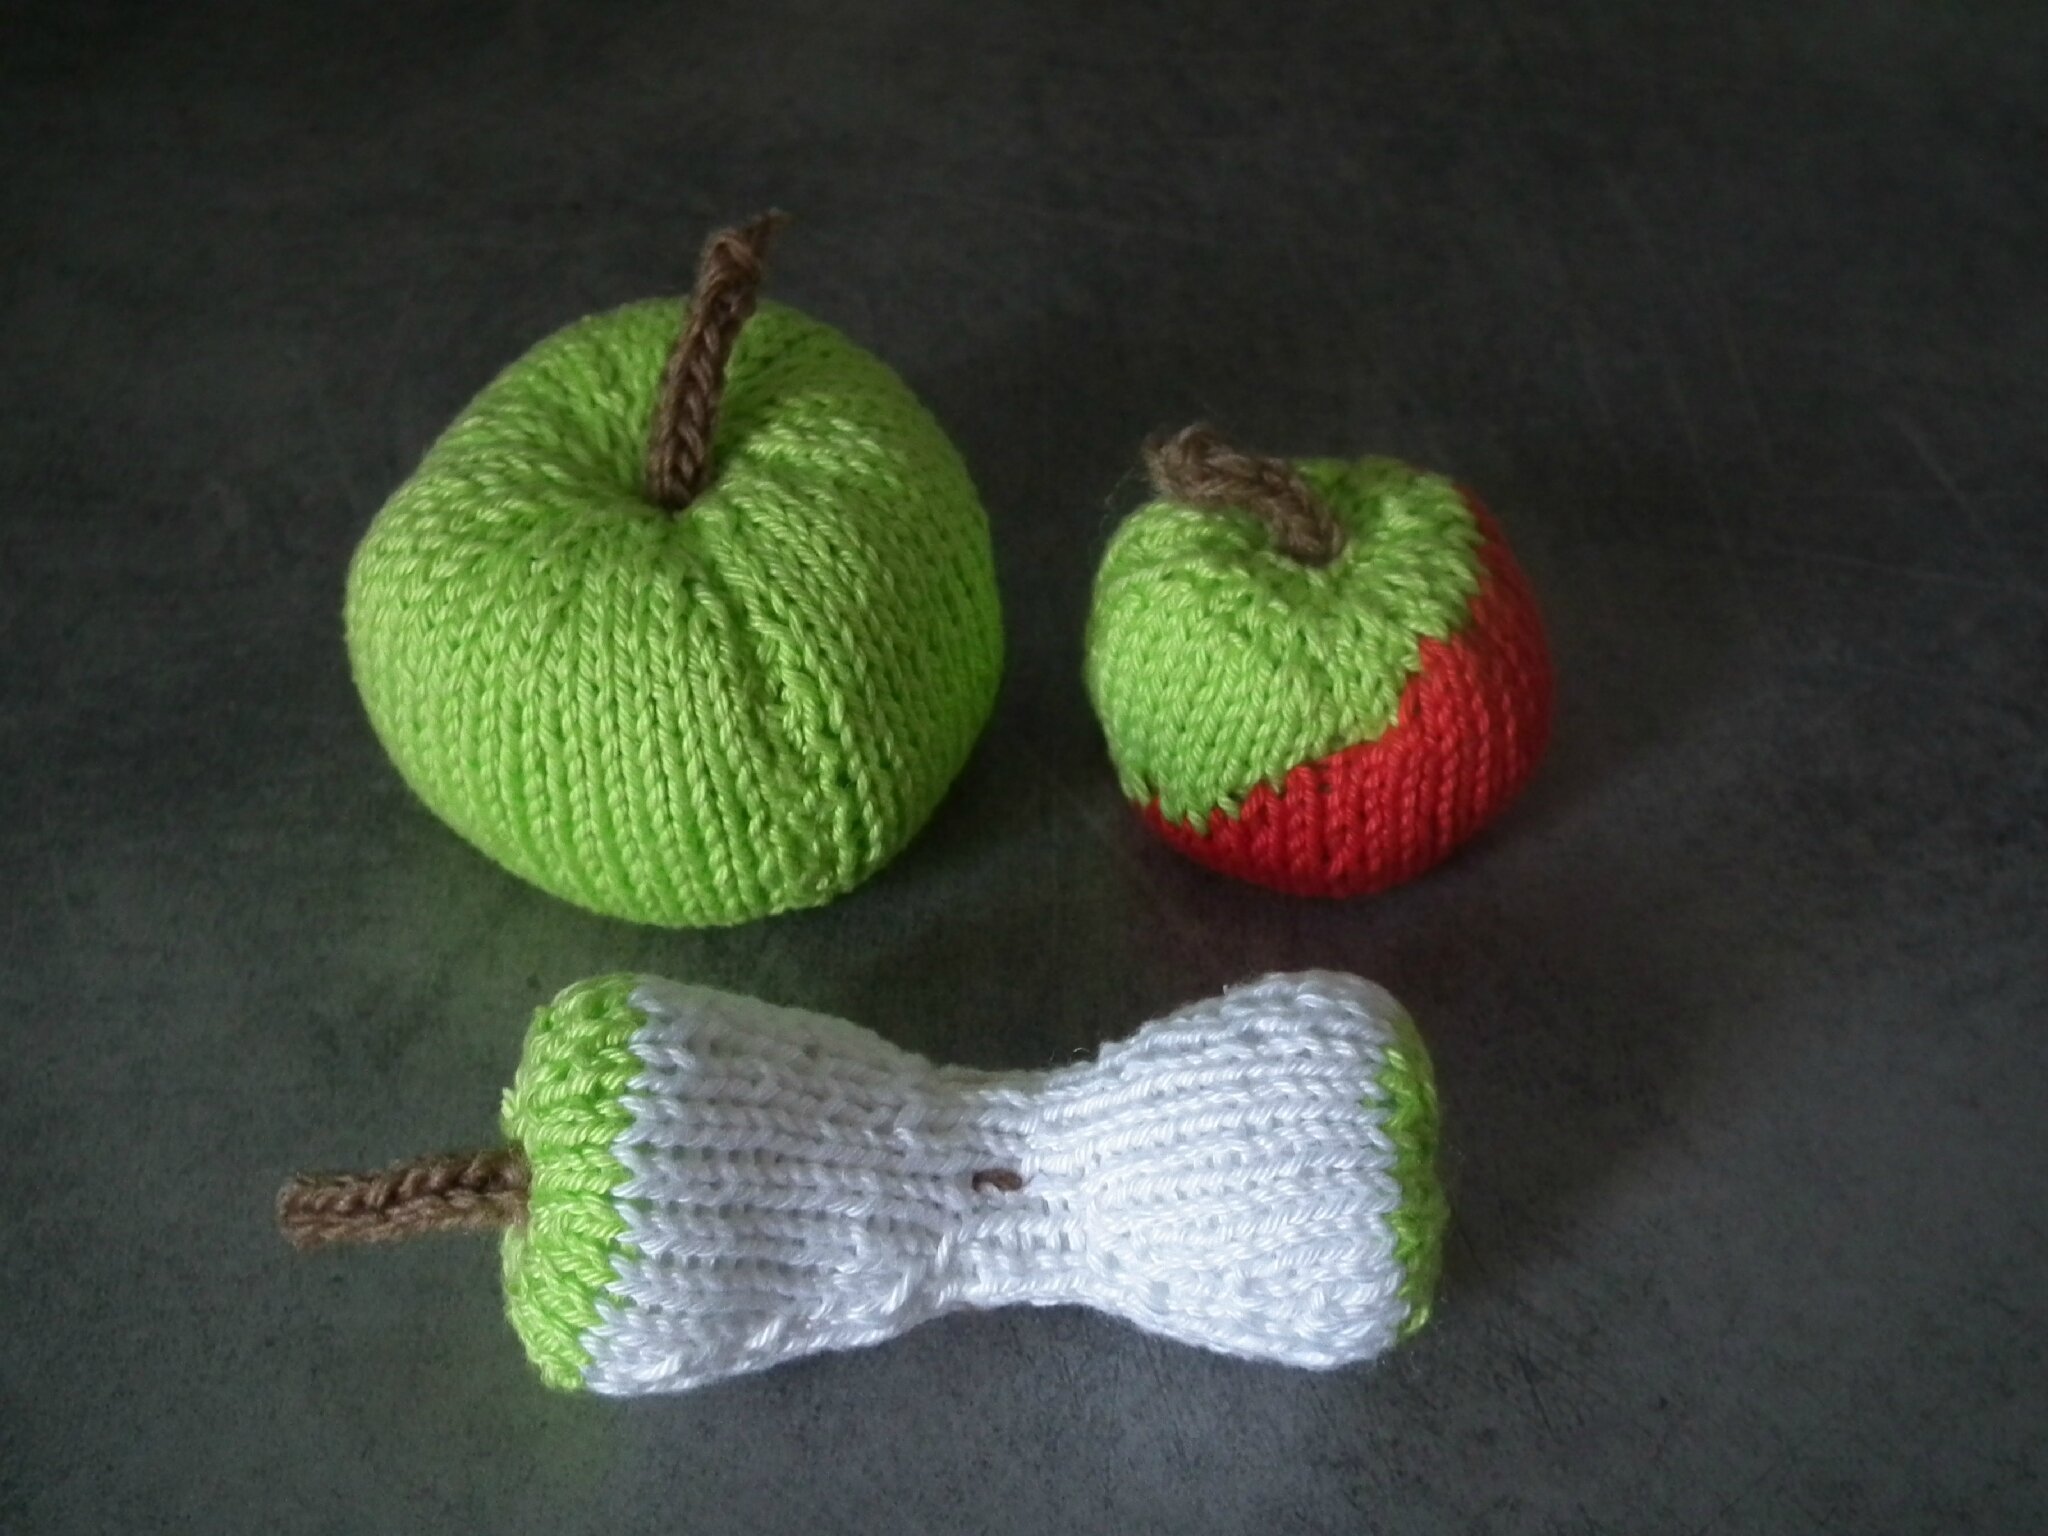 tricoter fruits et legumes